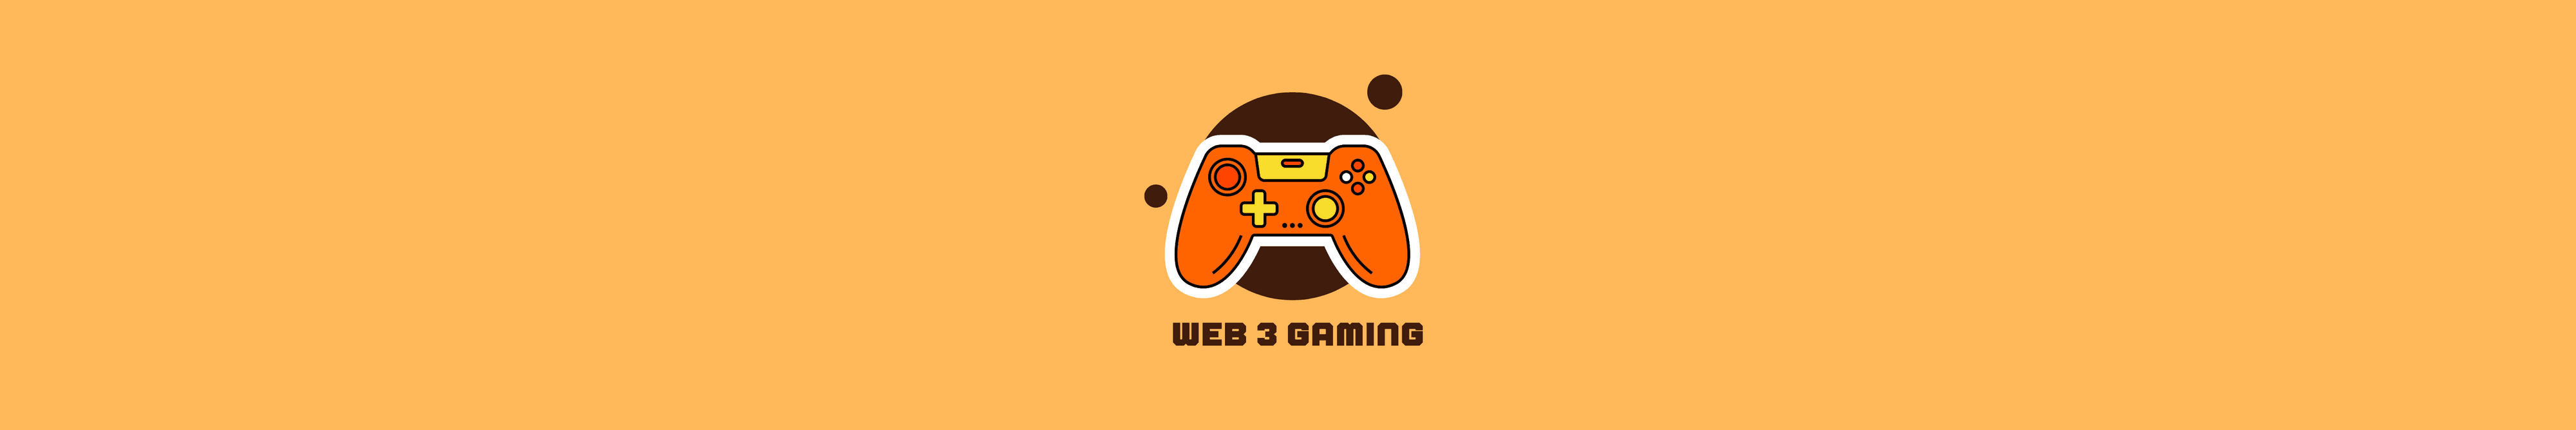 Web-3-Gaming-Fund 横幅